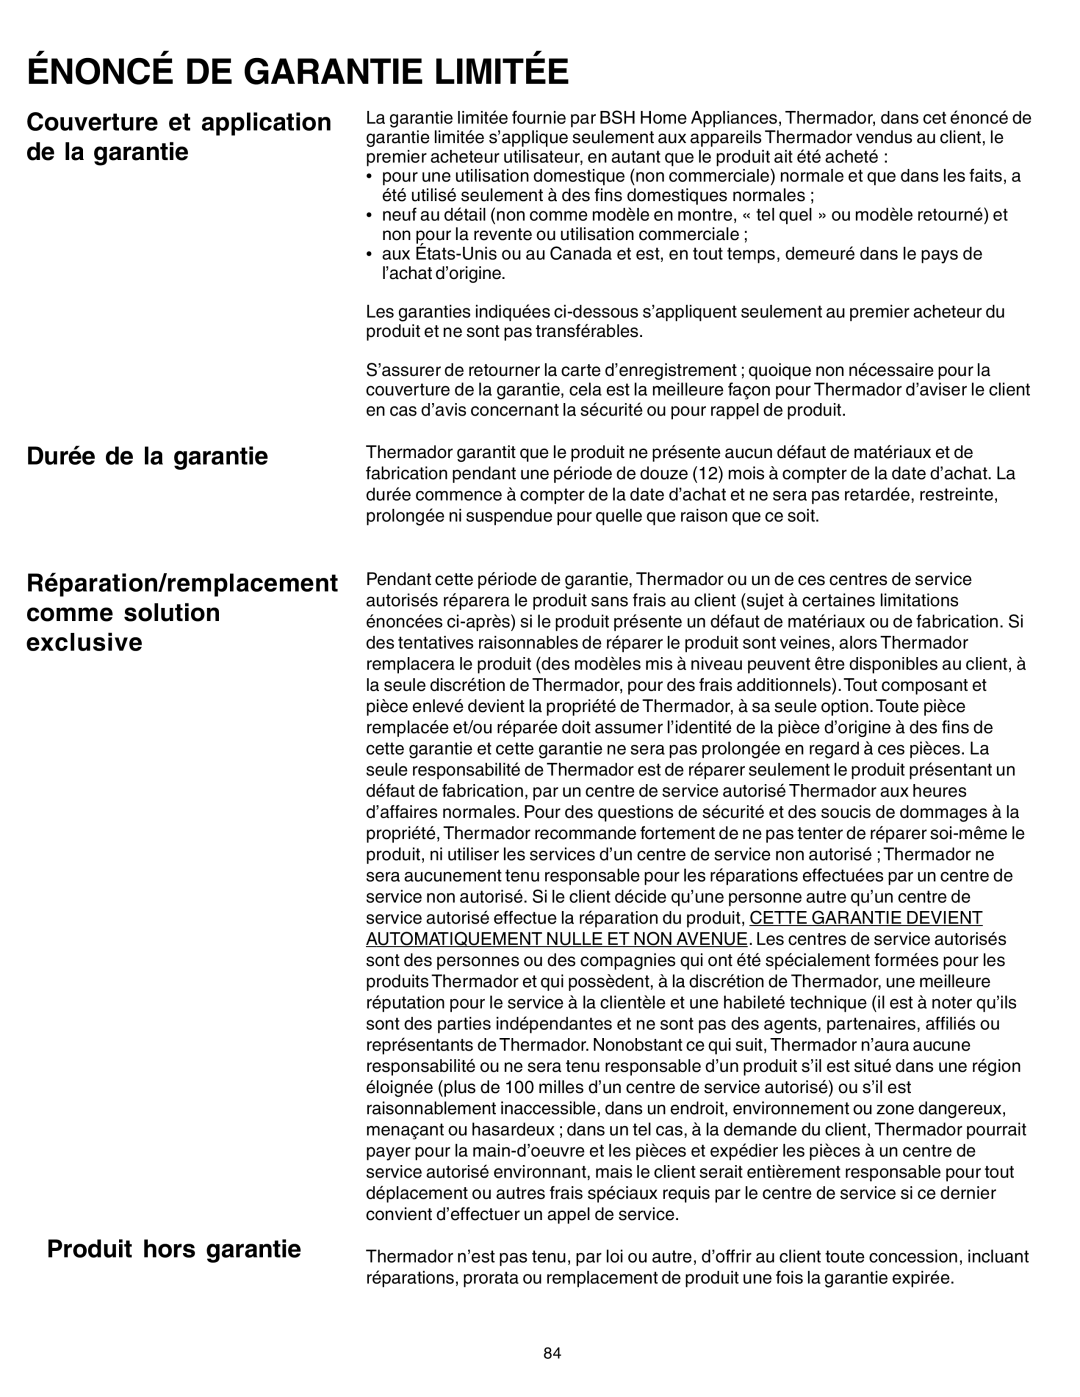 Thermador PG30 Énoncé De Garantie Limitée, Couverture et application de la garantie, Durée de la garantie 